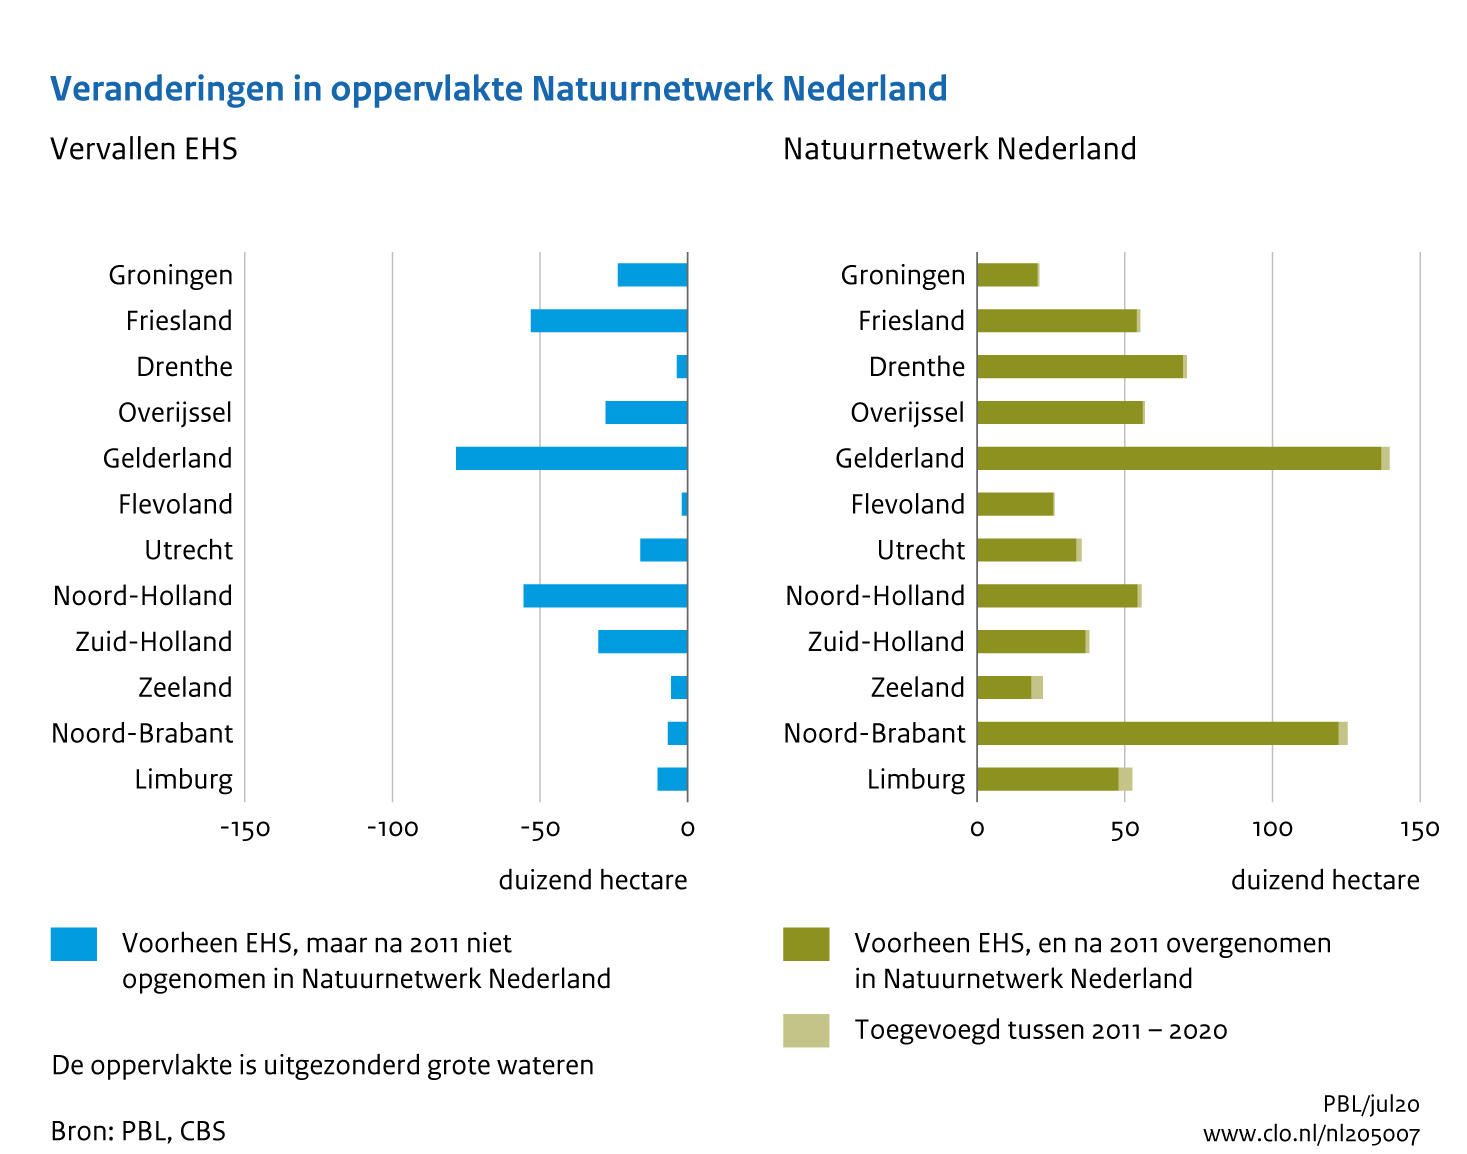 Figuur Voormalige EHS en verandering in oppervlakte van het Natuurnetwerk Nederland tussen 2011 en 2020. In de rest van de tekst wordt deze figuur uitgebreider uitgelegd.